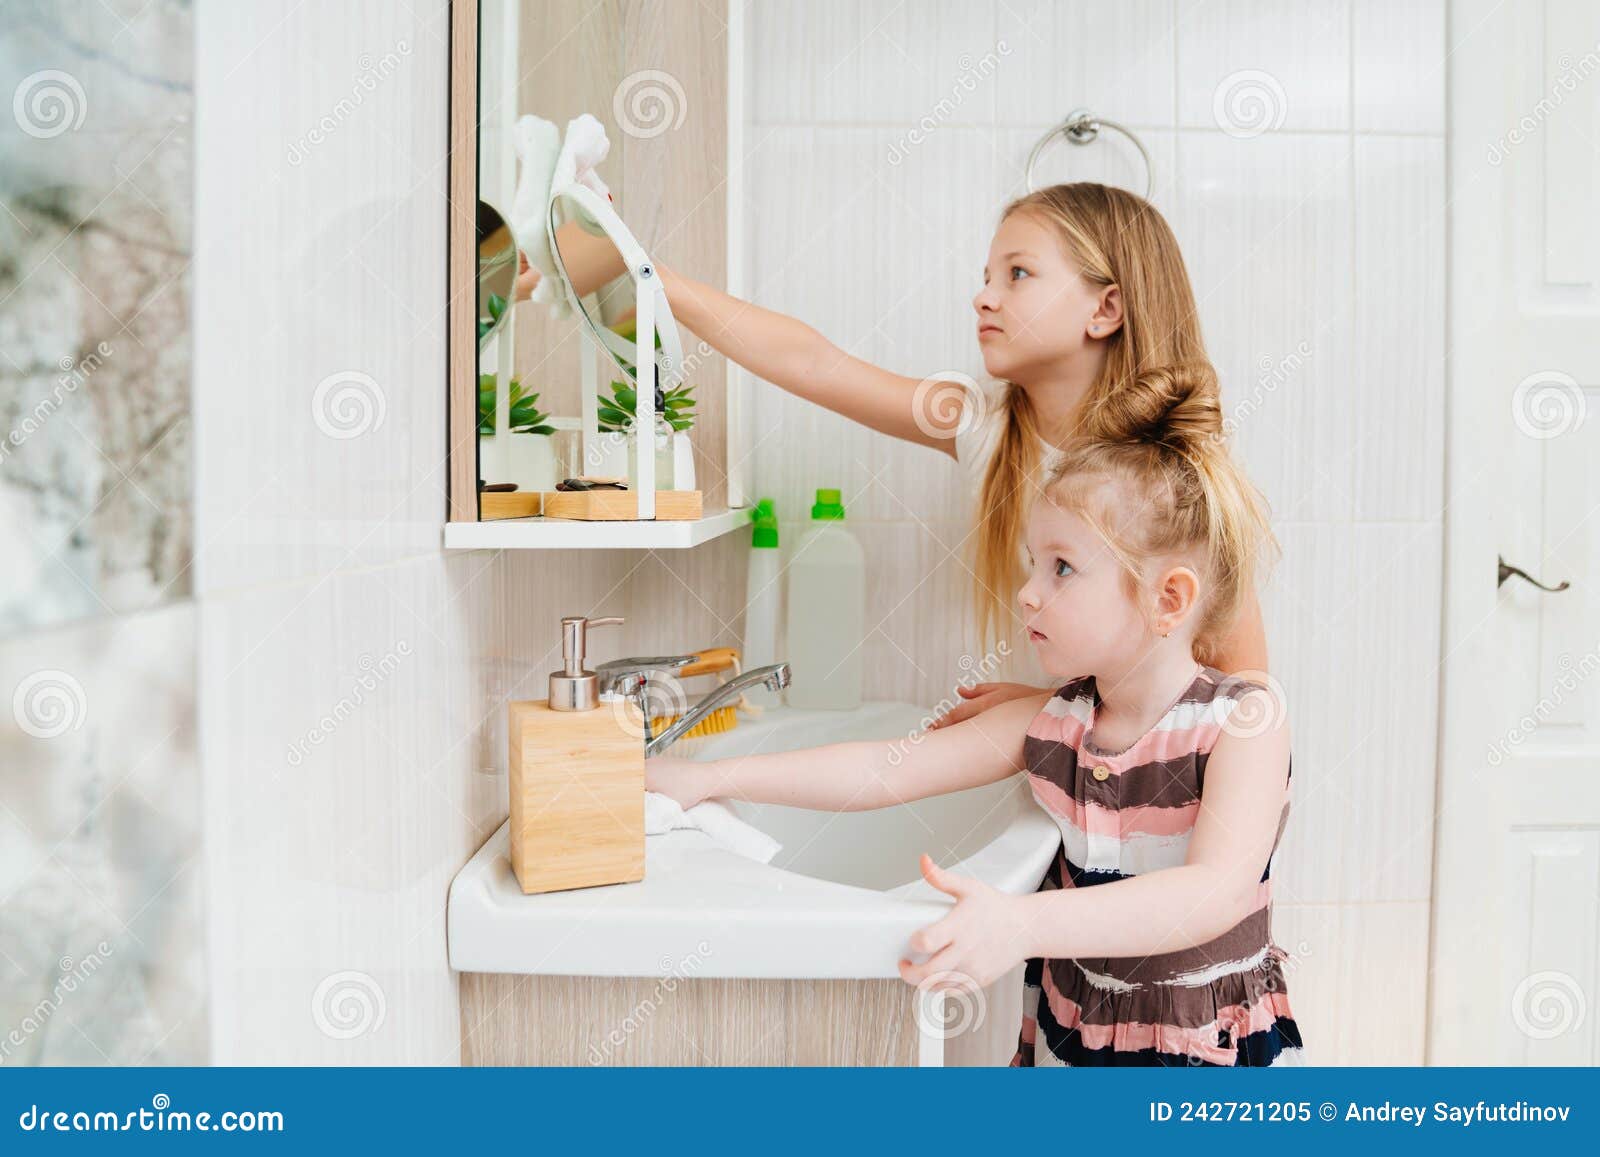 Chicas Lindas Lavan El Lavabo Y El Espejo Del Baño Con Un Limpiador  Especial. Imagen de archivo - Imagen de interior, higiene: 242721205